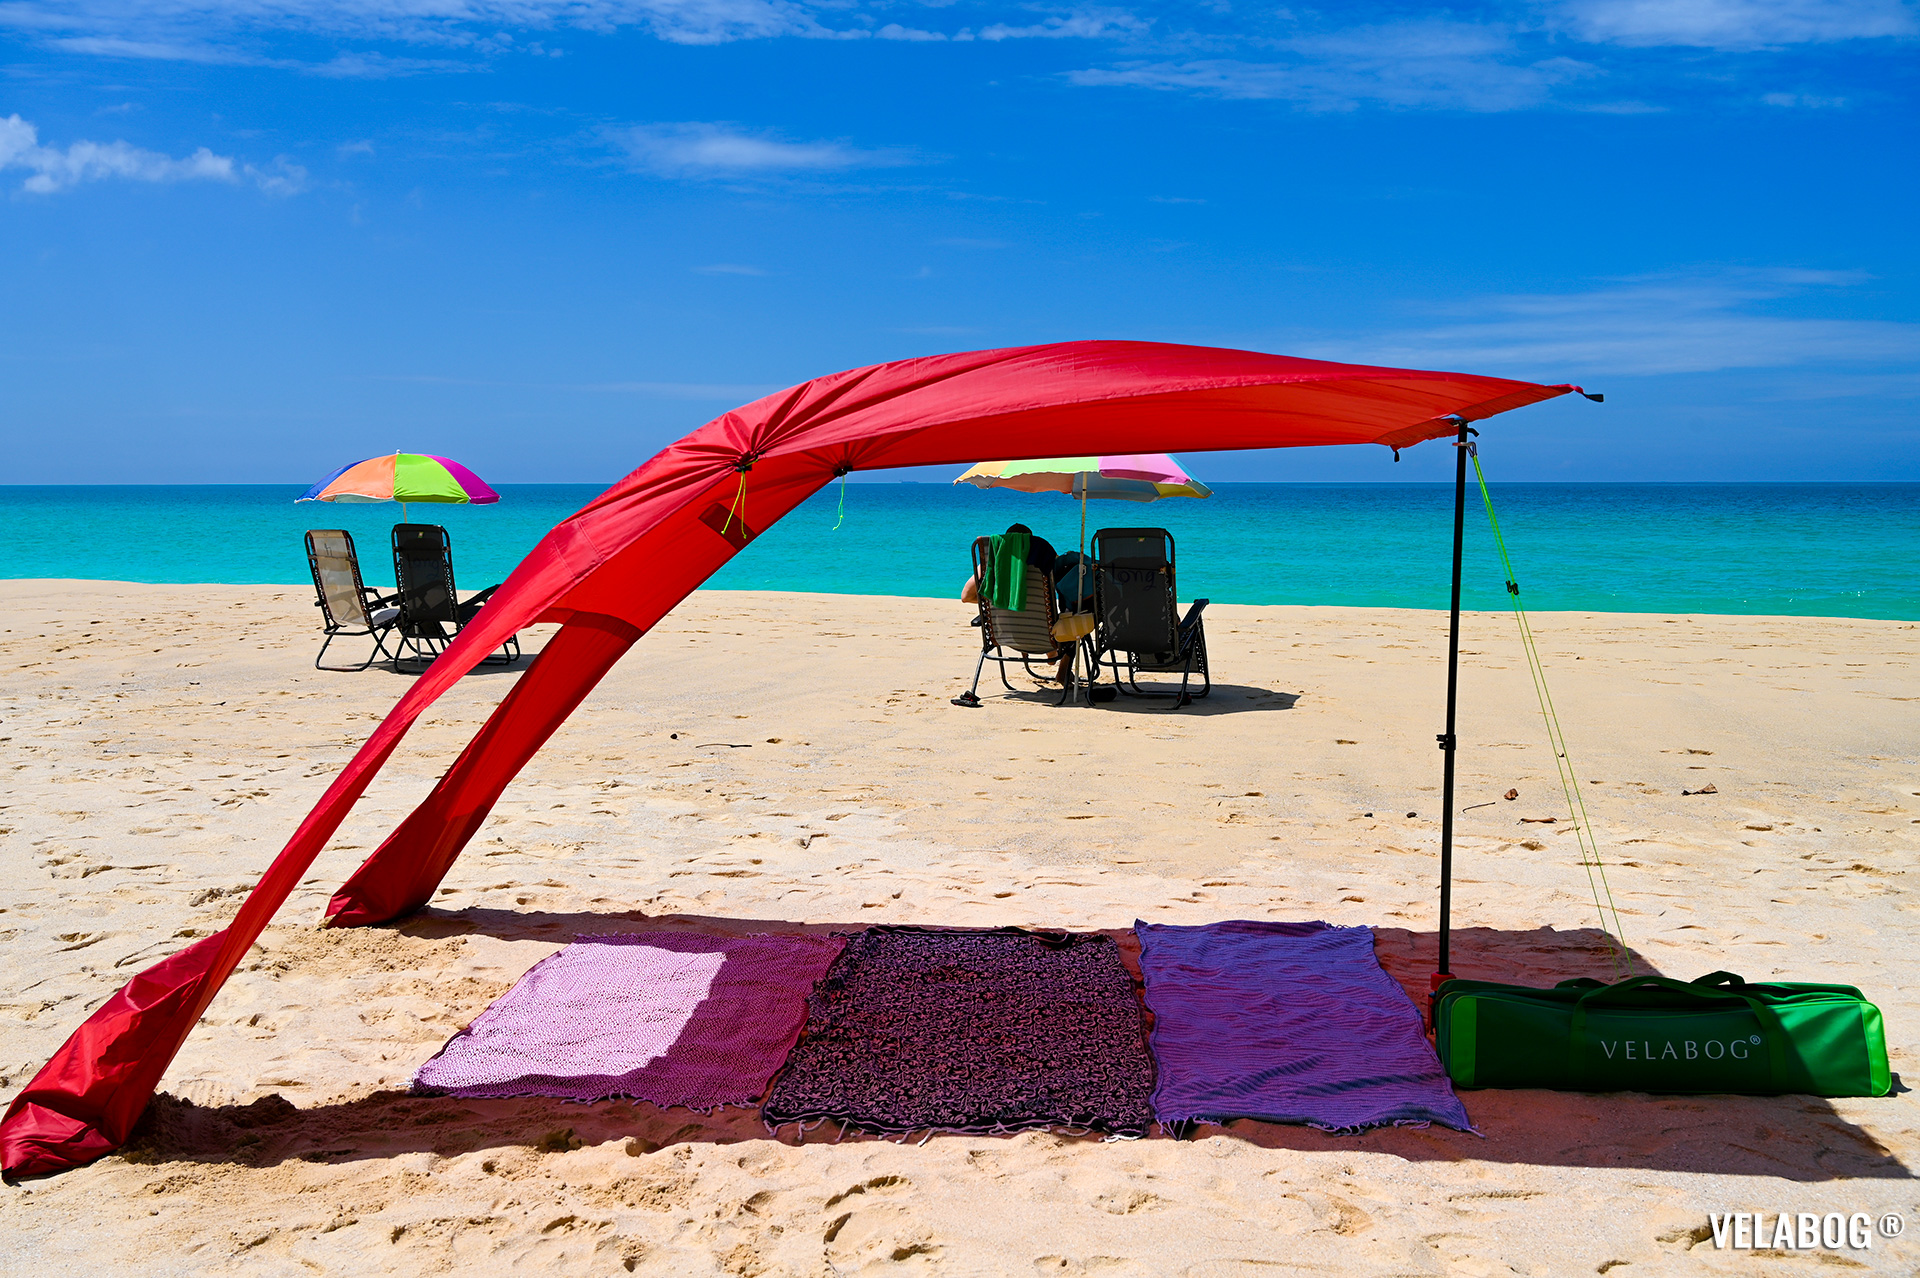 Солнечный парус Velabog «Breeze» красный. Лучшее укрытие от солнца на пляже. Вариант установки при слабом или сильном ветре. Большая тень по сравнению с пляжными зонтами.